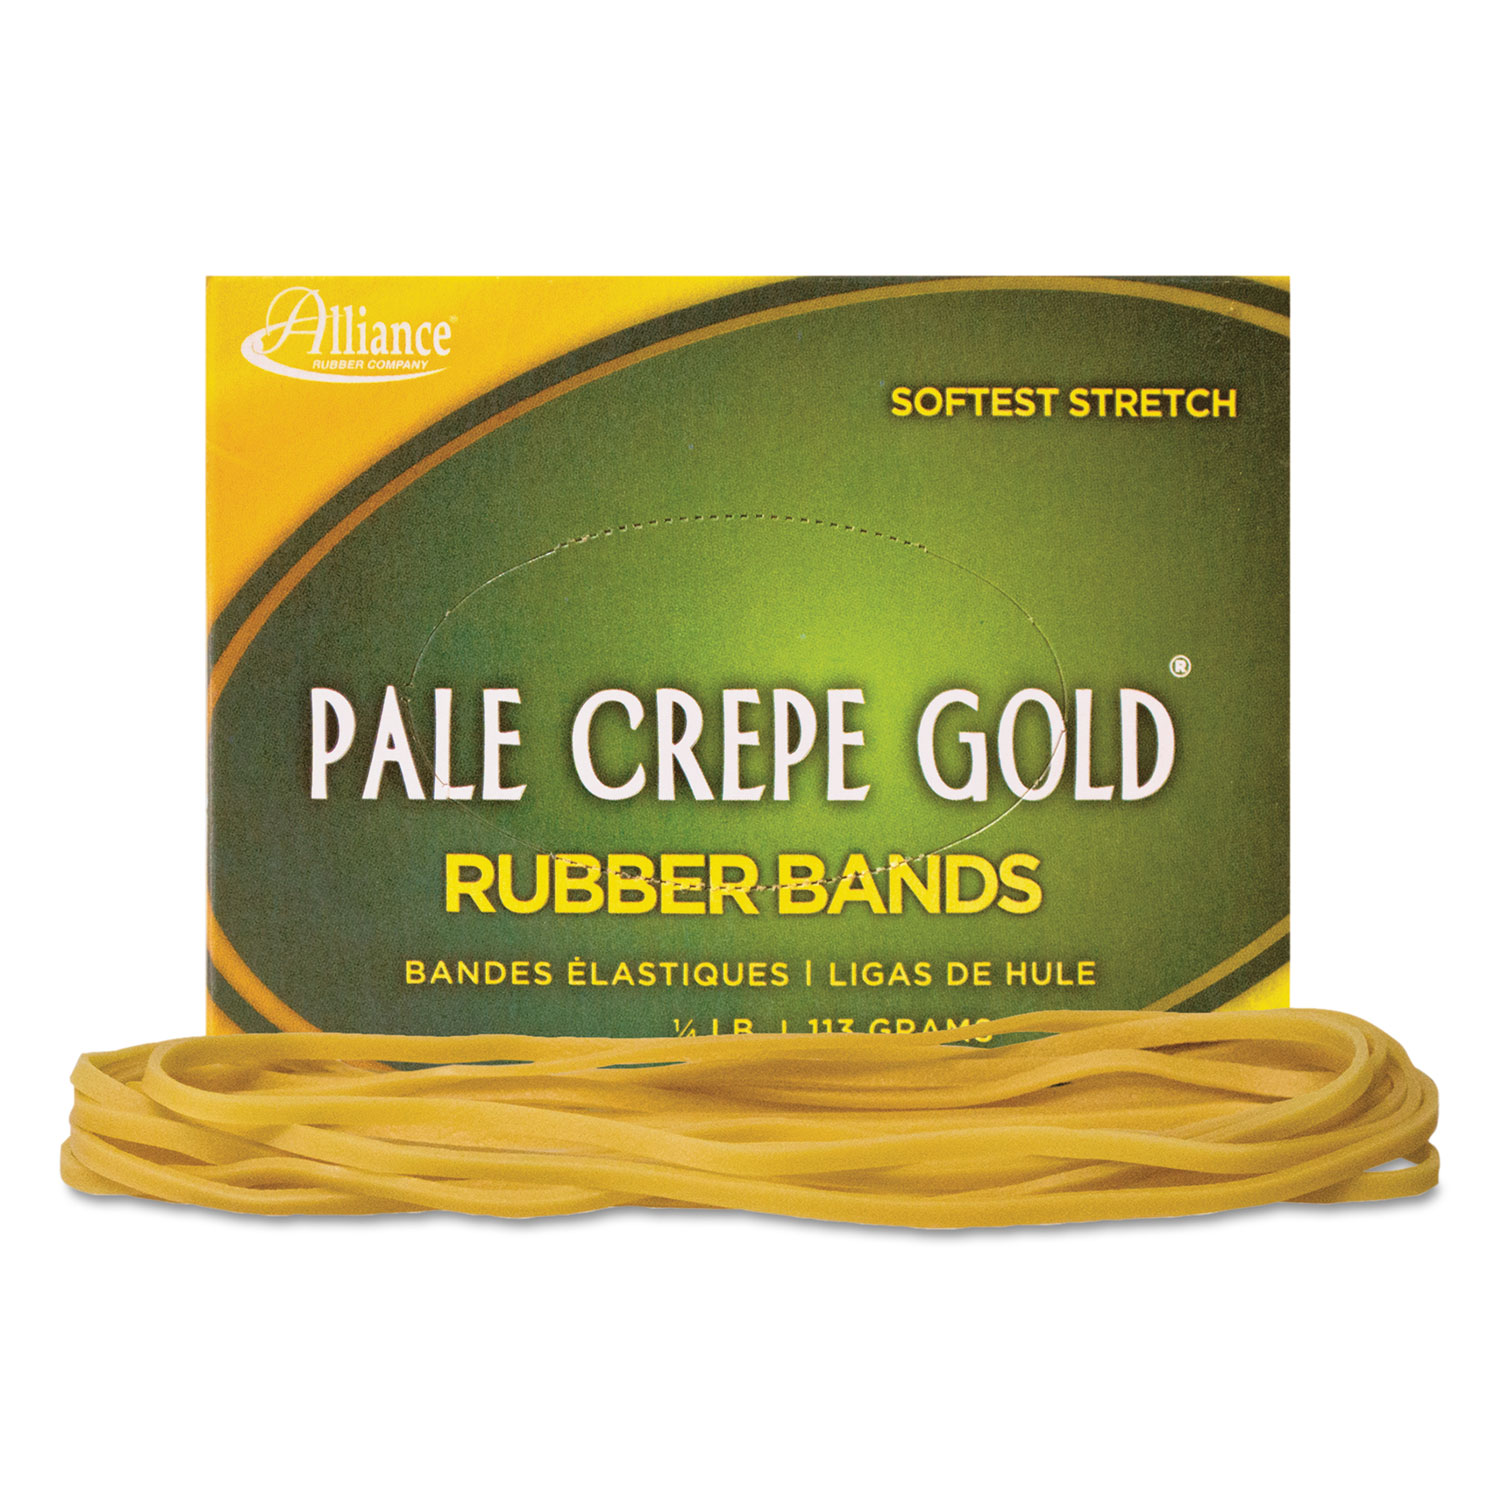 Pale Crepe Gold Rubber Bands, Sz. 117B, 7 x 1/8, 1lb Box